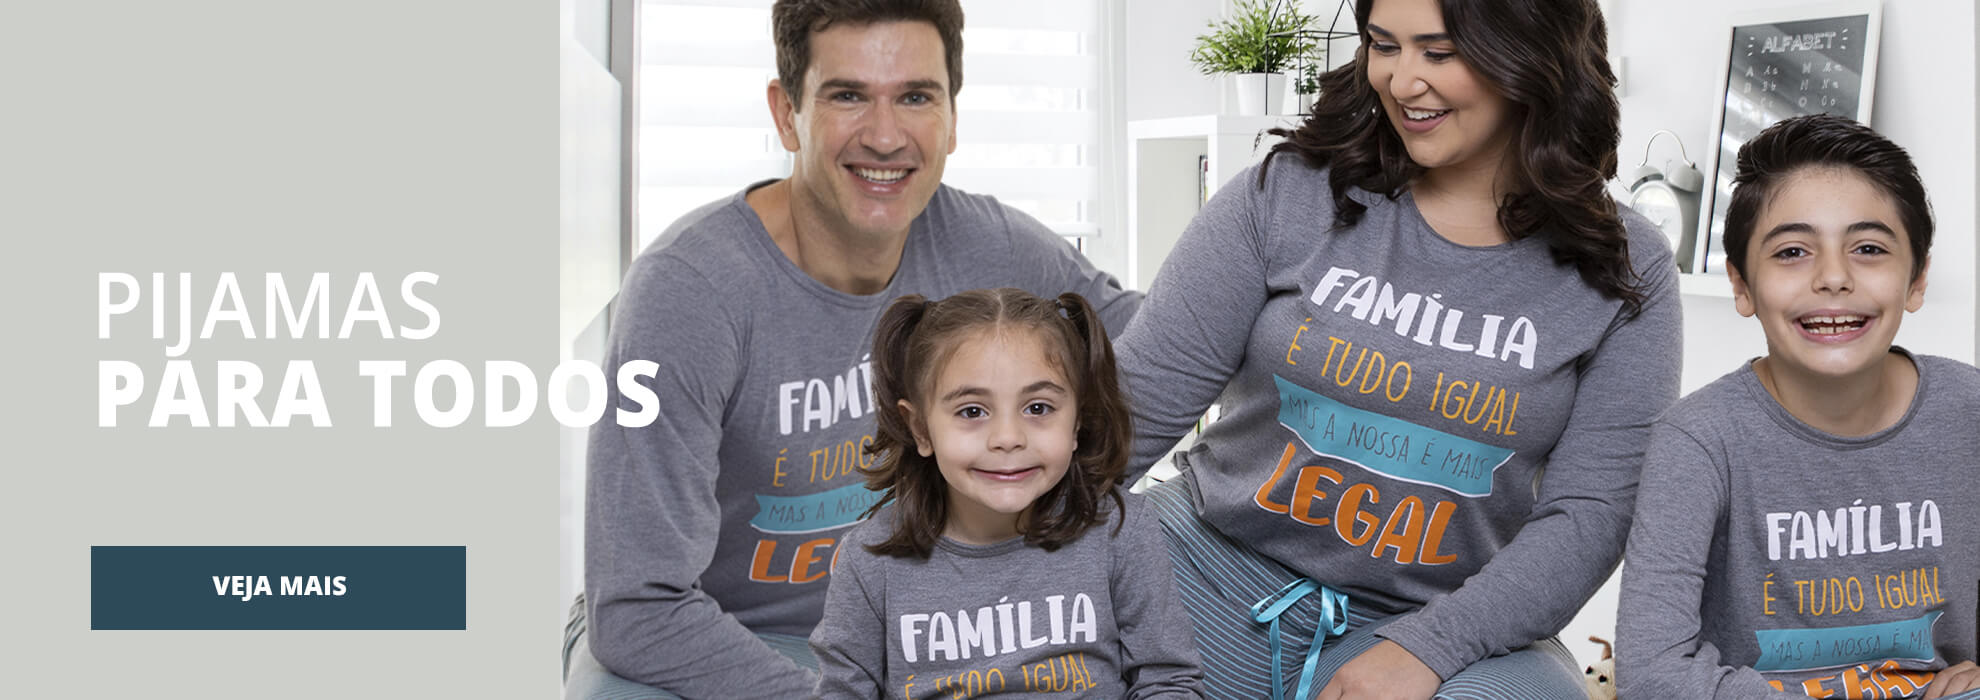 Banner pijamas família